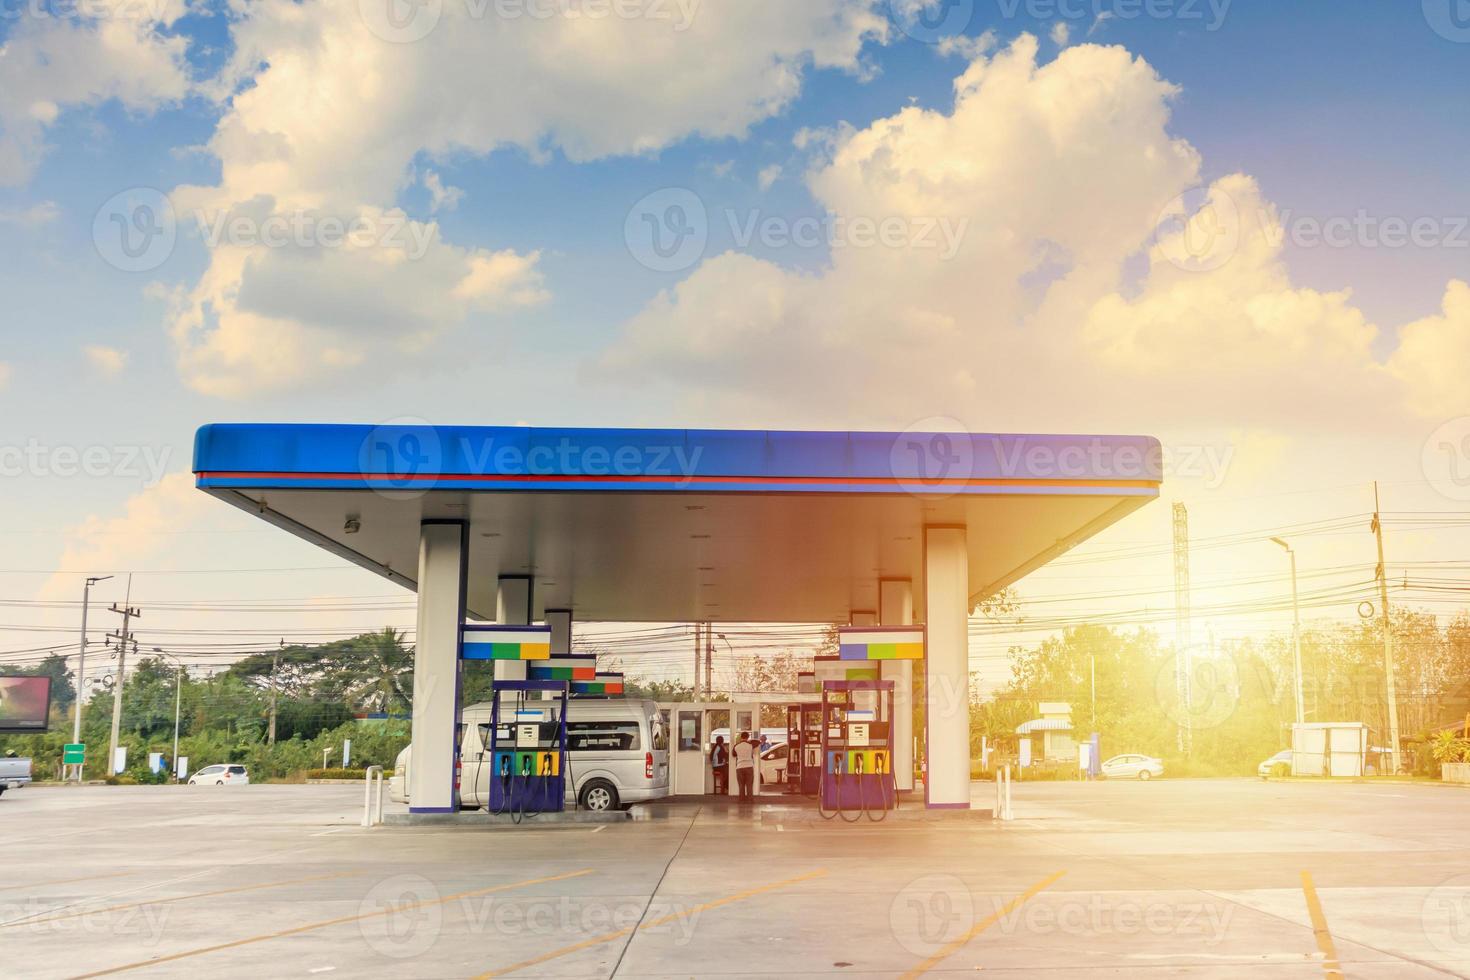 bensin bensinstation med moln och blå himmel foto